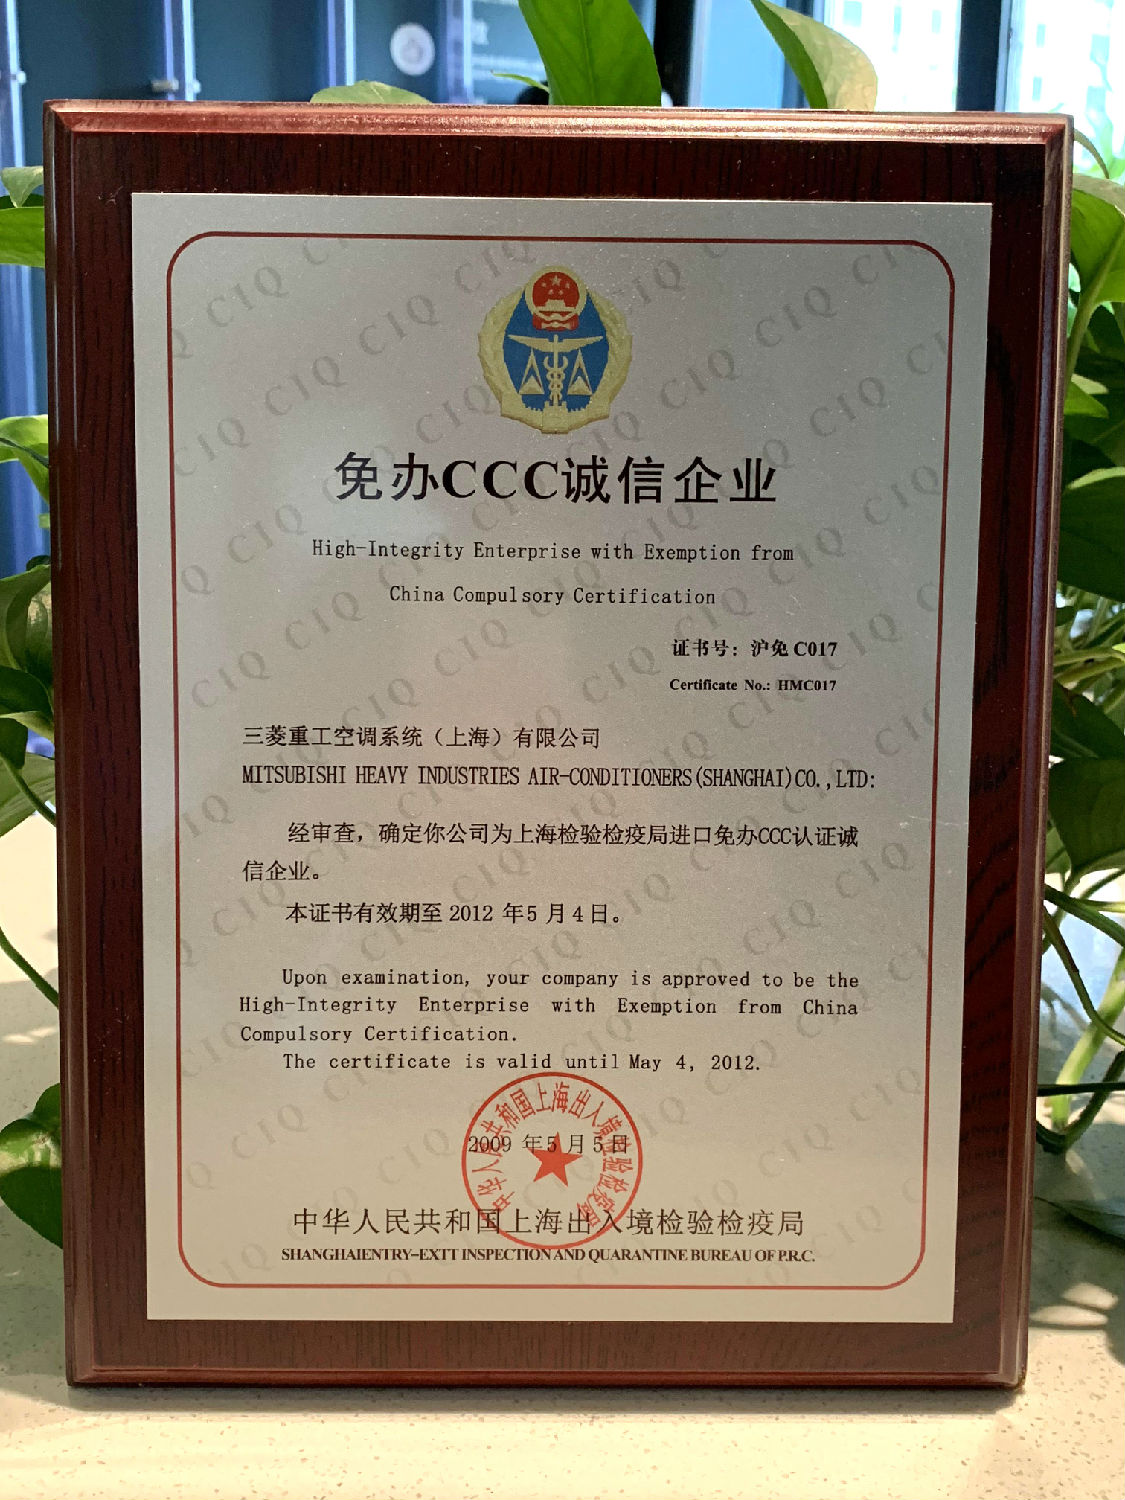 2012年日新环境三菱重工空调系统“上海检验检疫局进口免办CCC认证诚信企业”